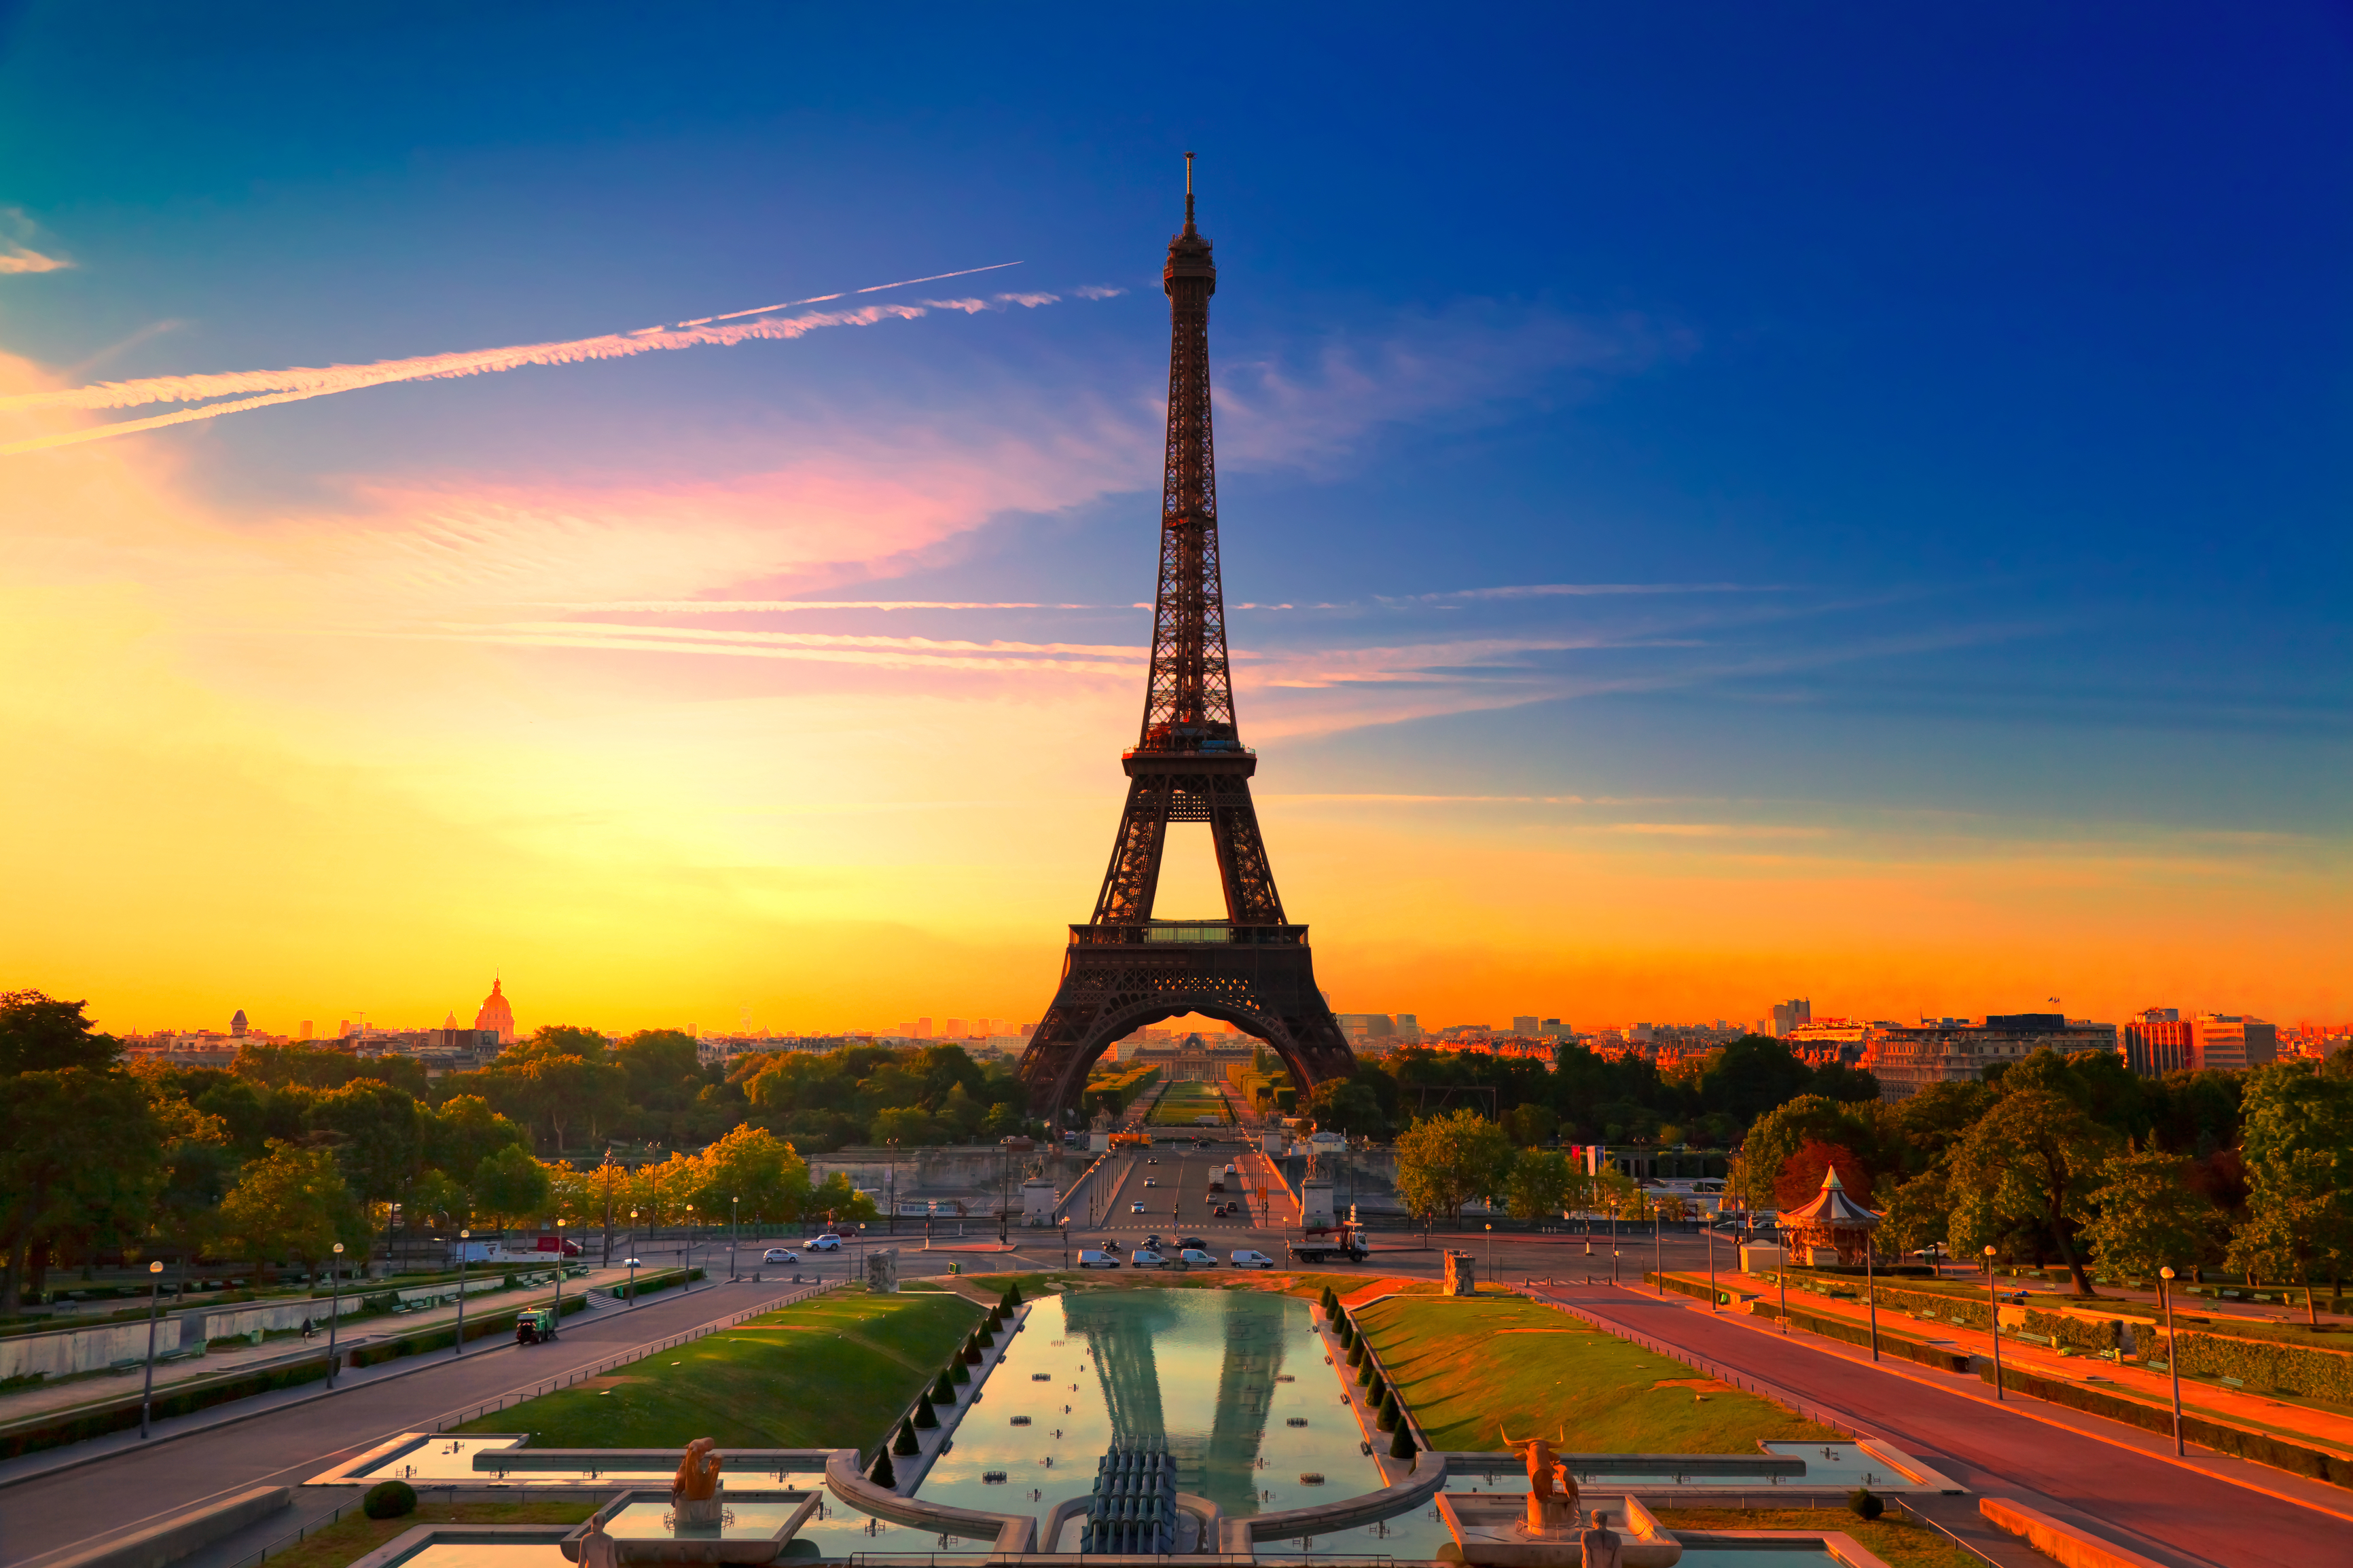 Round-trip flights to Paris from $418